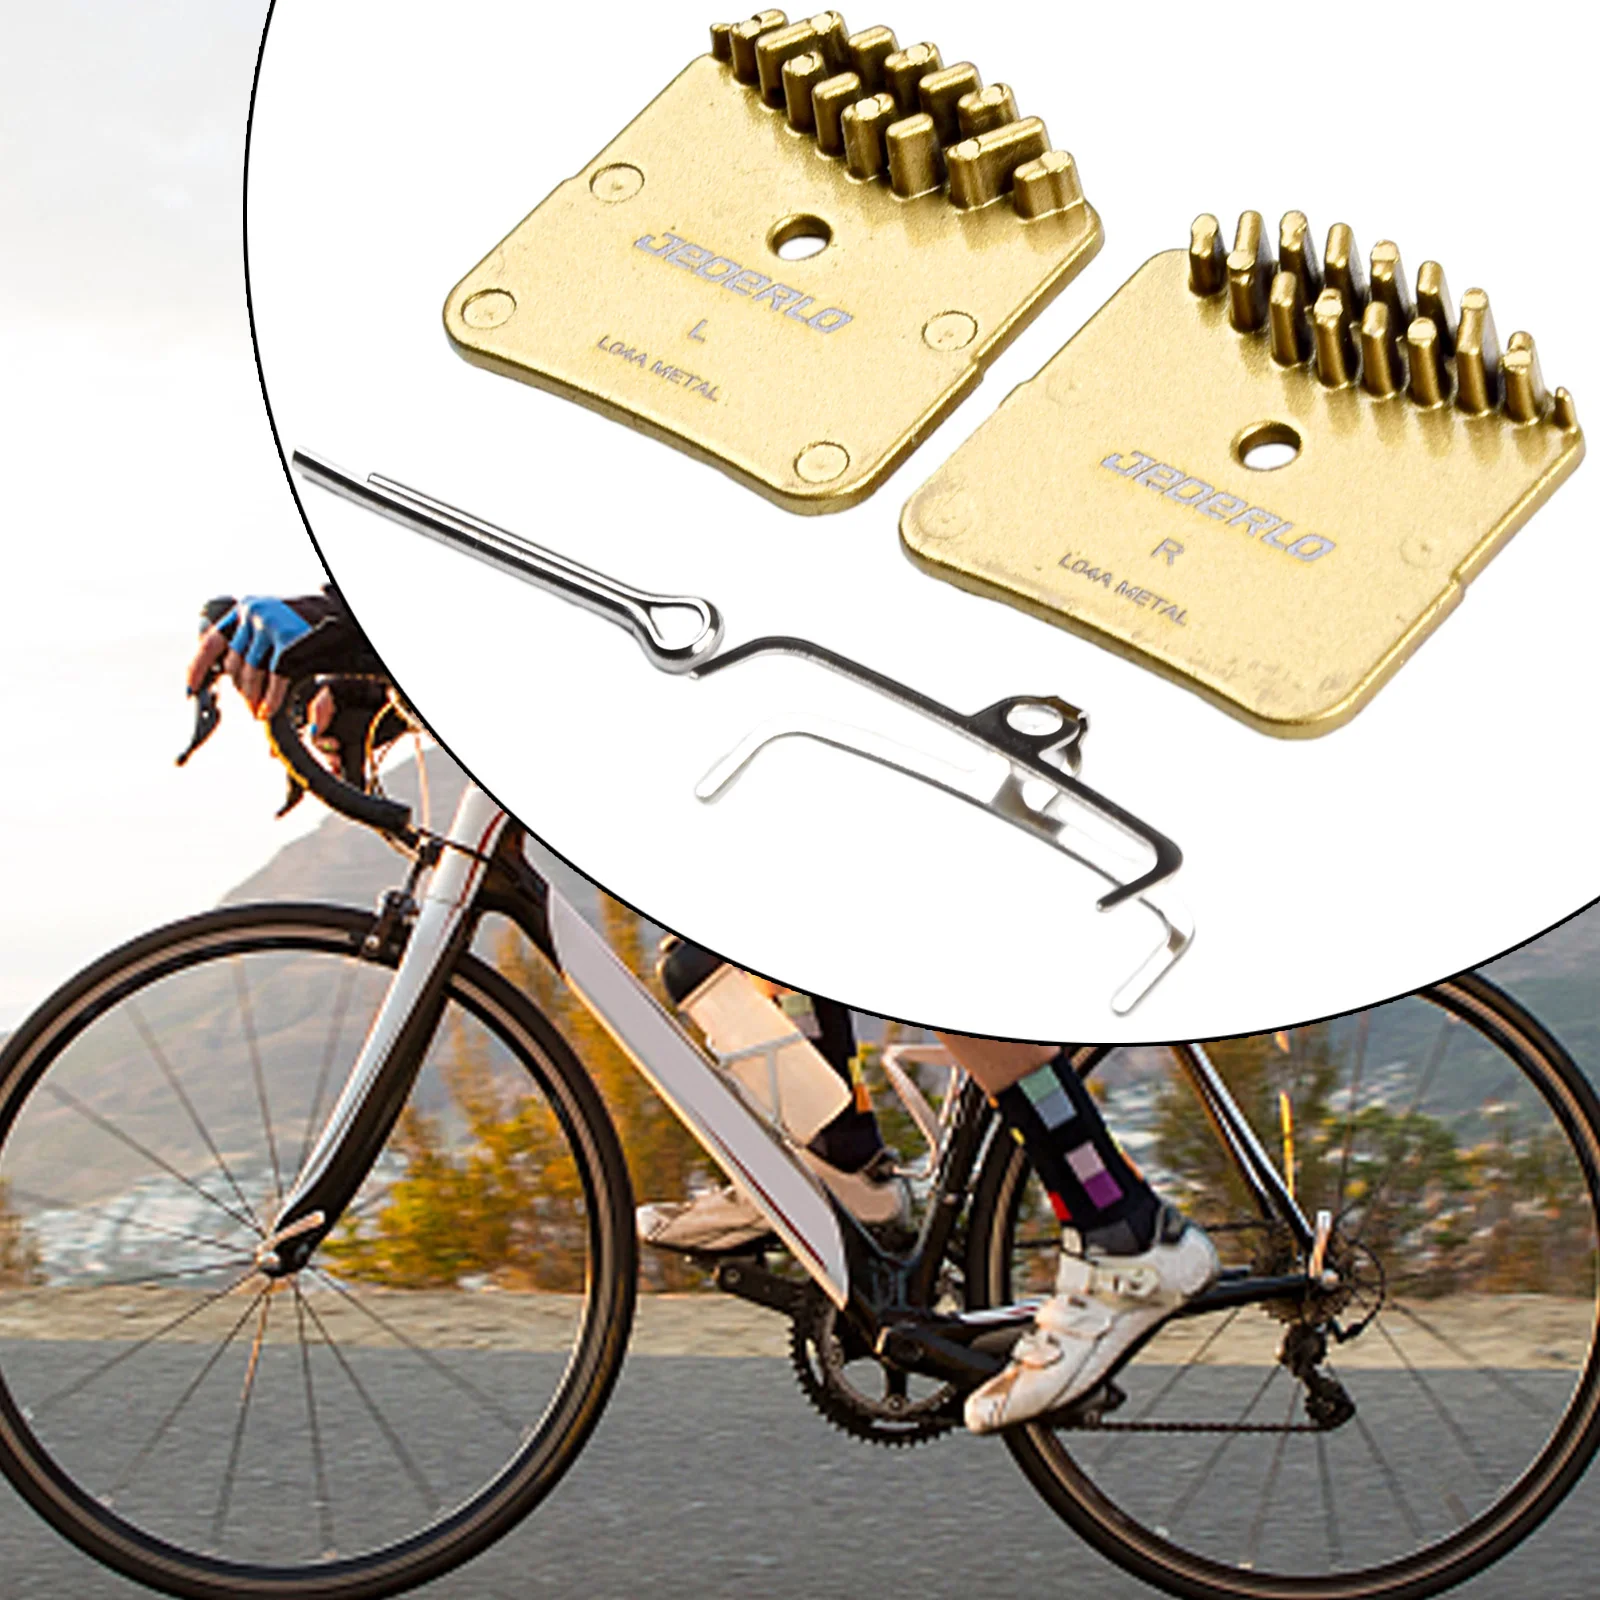 

1 Pair Bicycle Metal Disc Brake Pads Bike Brake Parts For-Shimano BR-R9170 R8070 R7070 RS505 SLX/XT M820 M640 M8020 H03A H03C